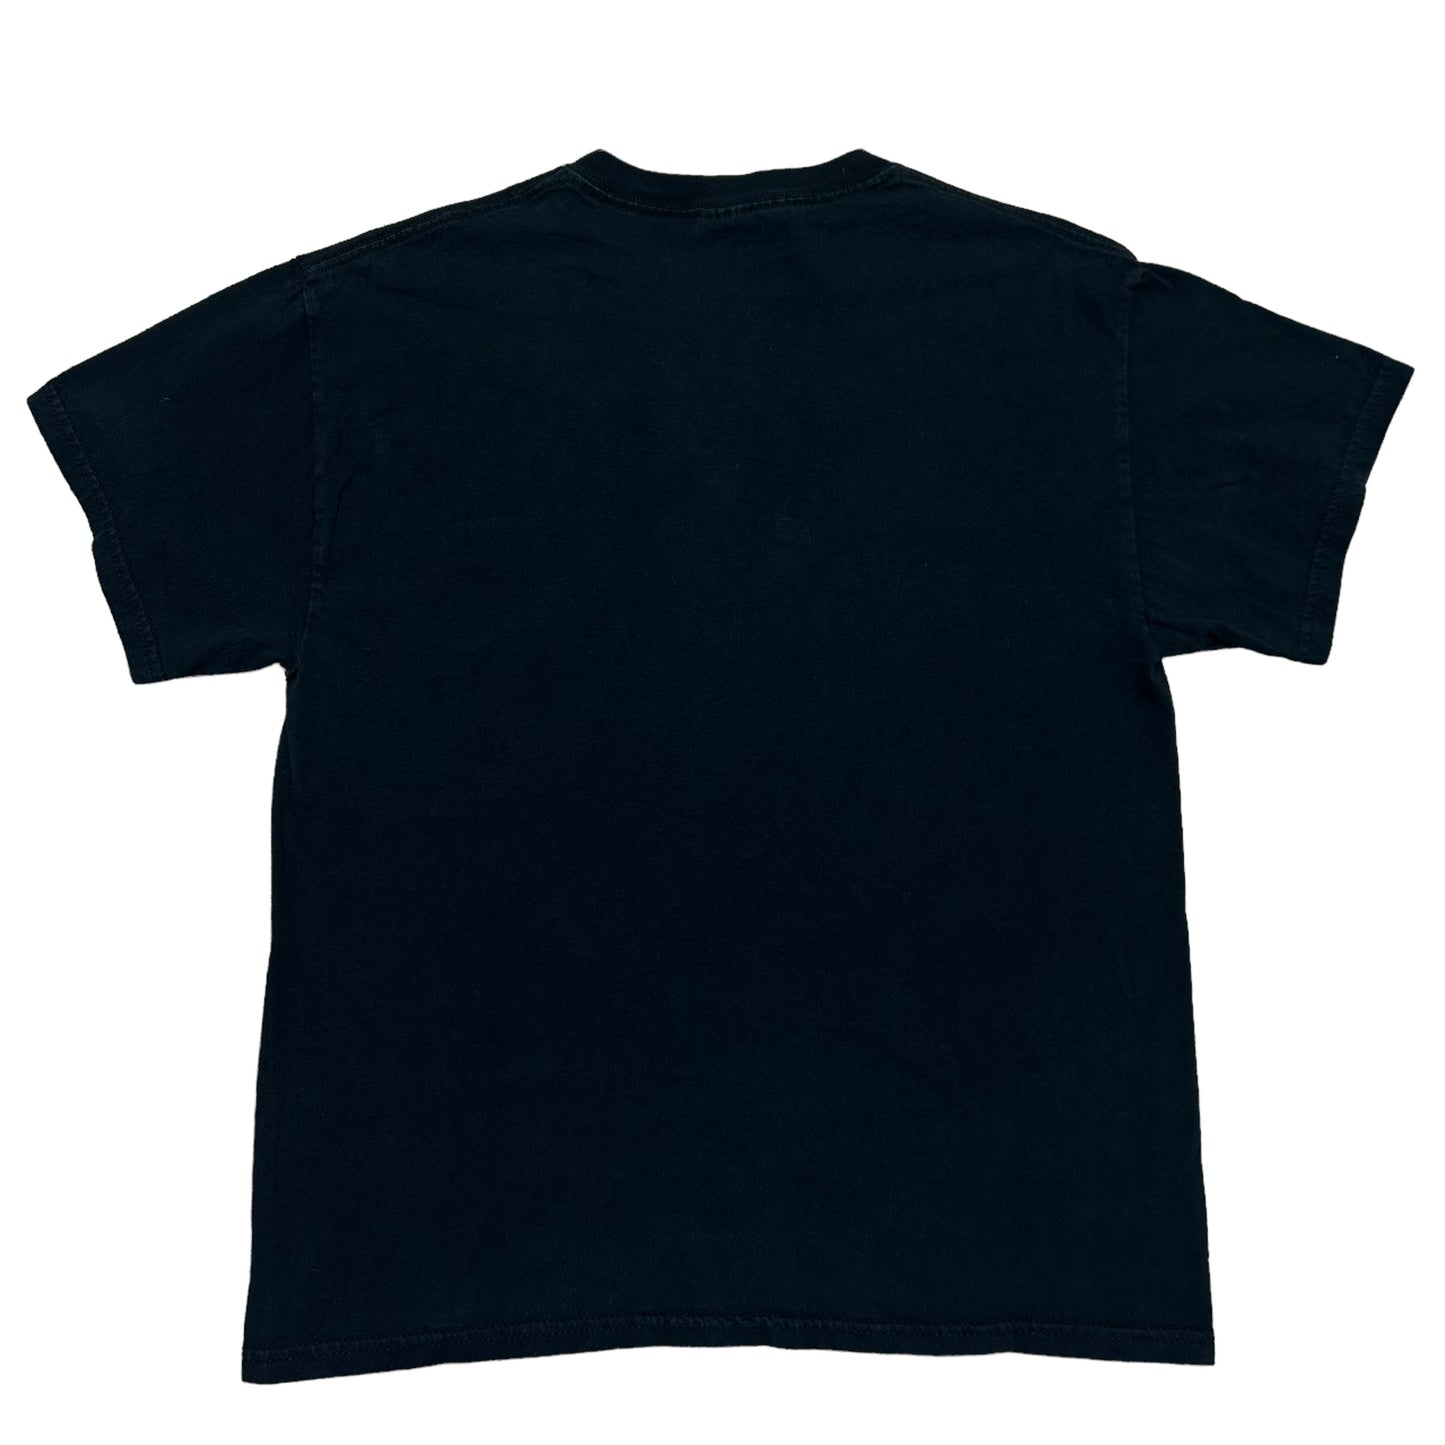 Vintage Y2K D.A.R.E. Lion Black Graphic T-Shirt - Size Large